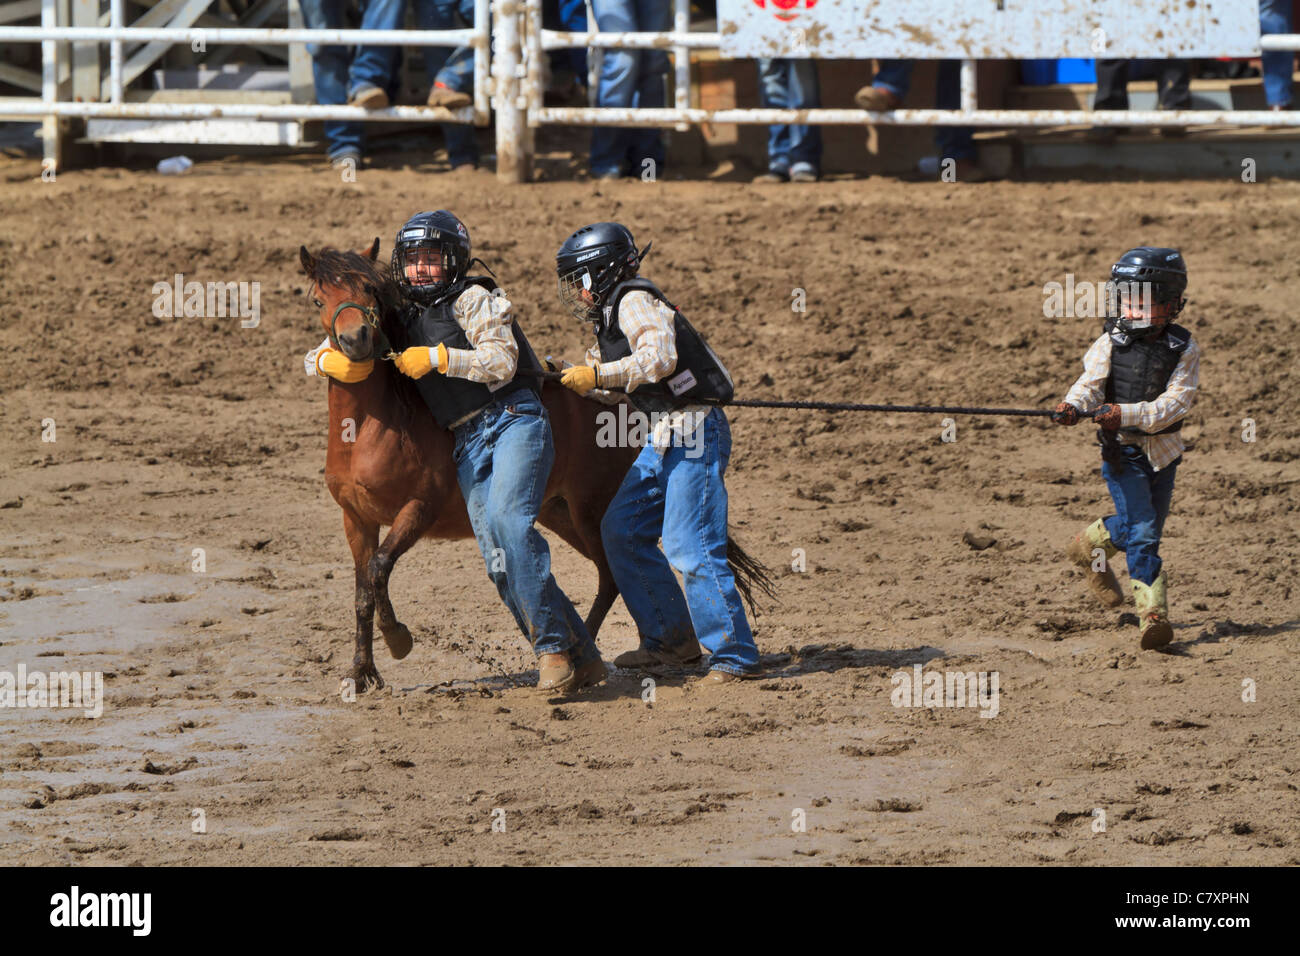 Wildes Pony Rennen, Calgary Stampede, Alberta, Kanada. Dies ist eine grobe Lager Rodeo-Veranstaltung für Kinder. Stockfoto